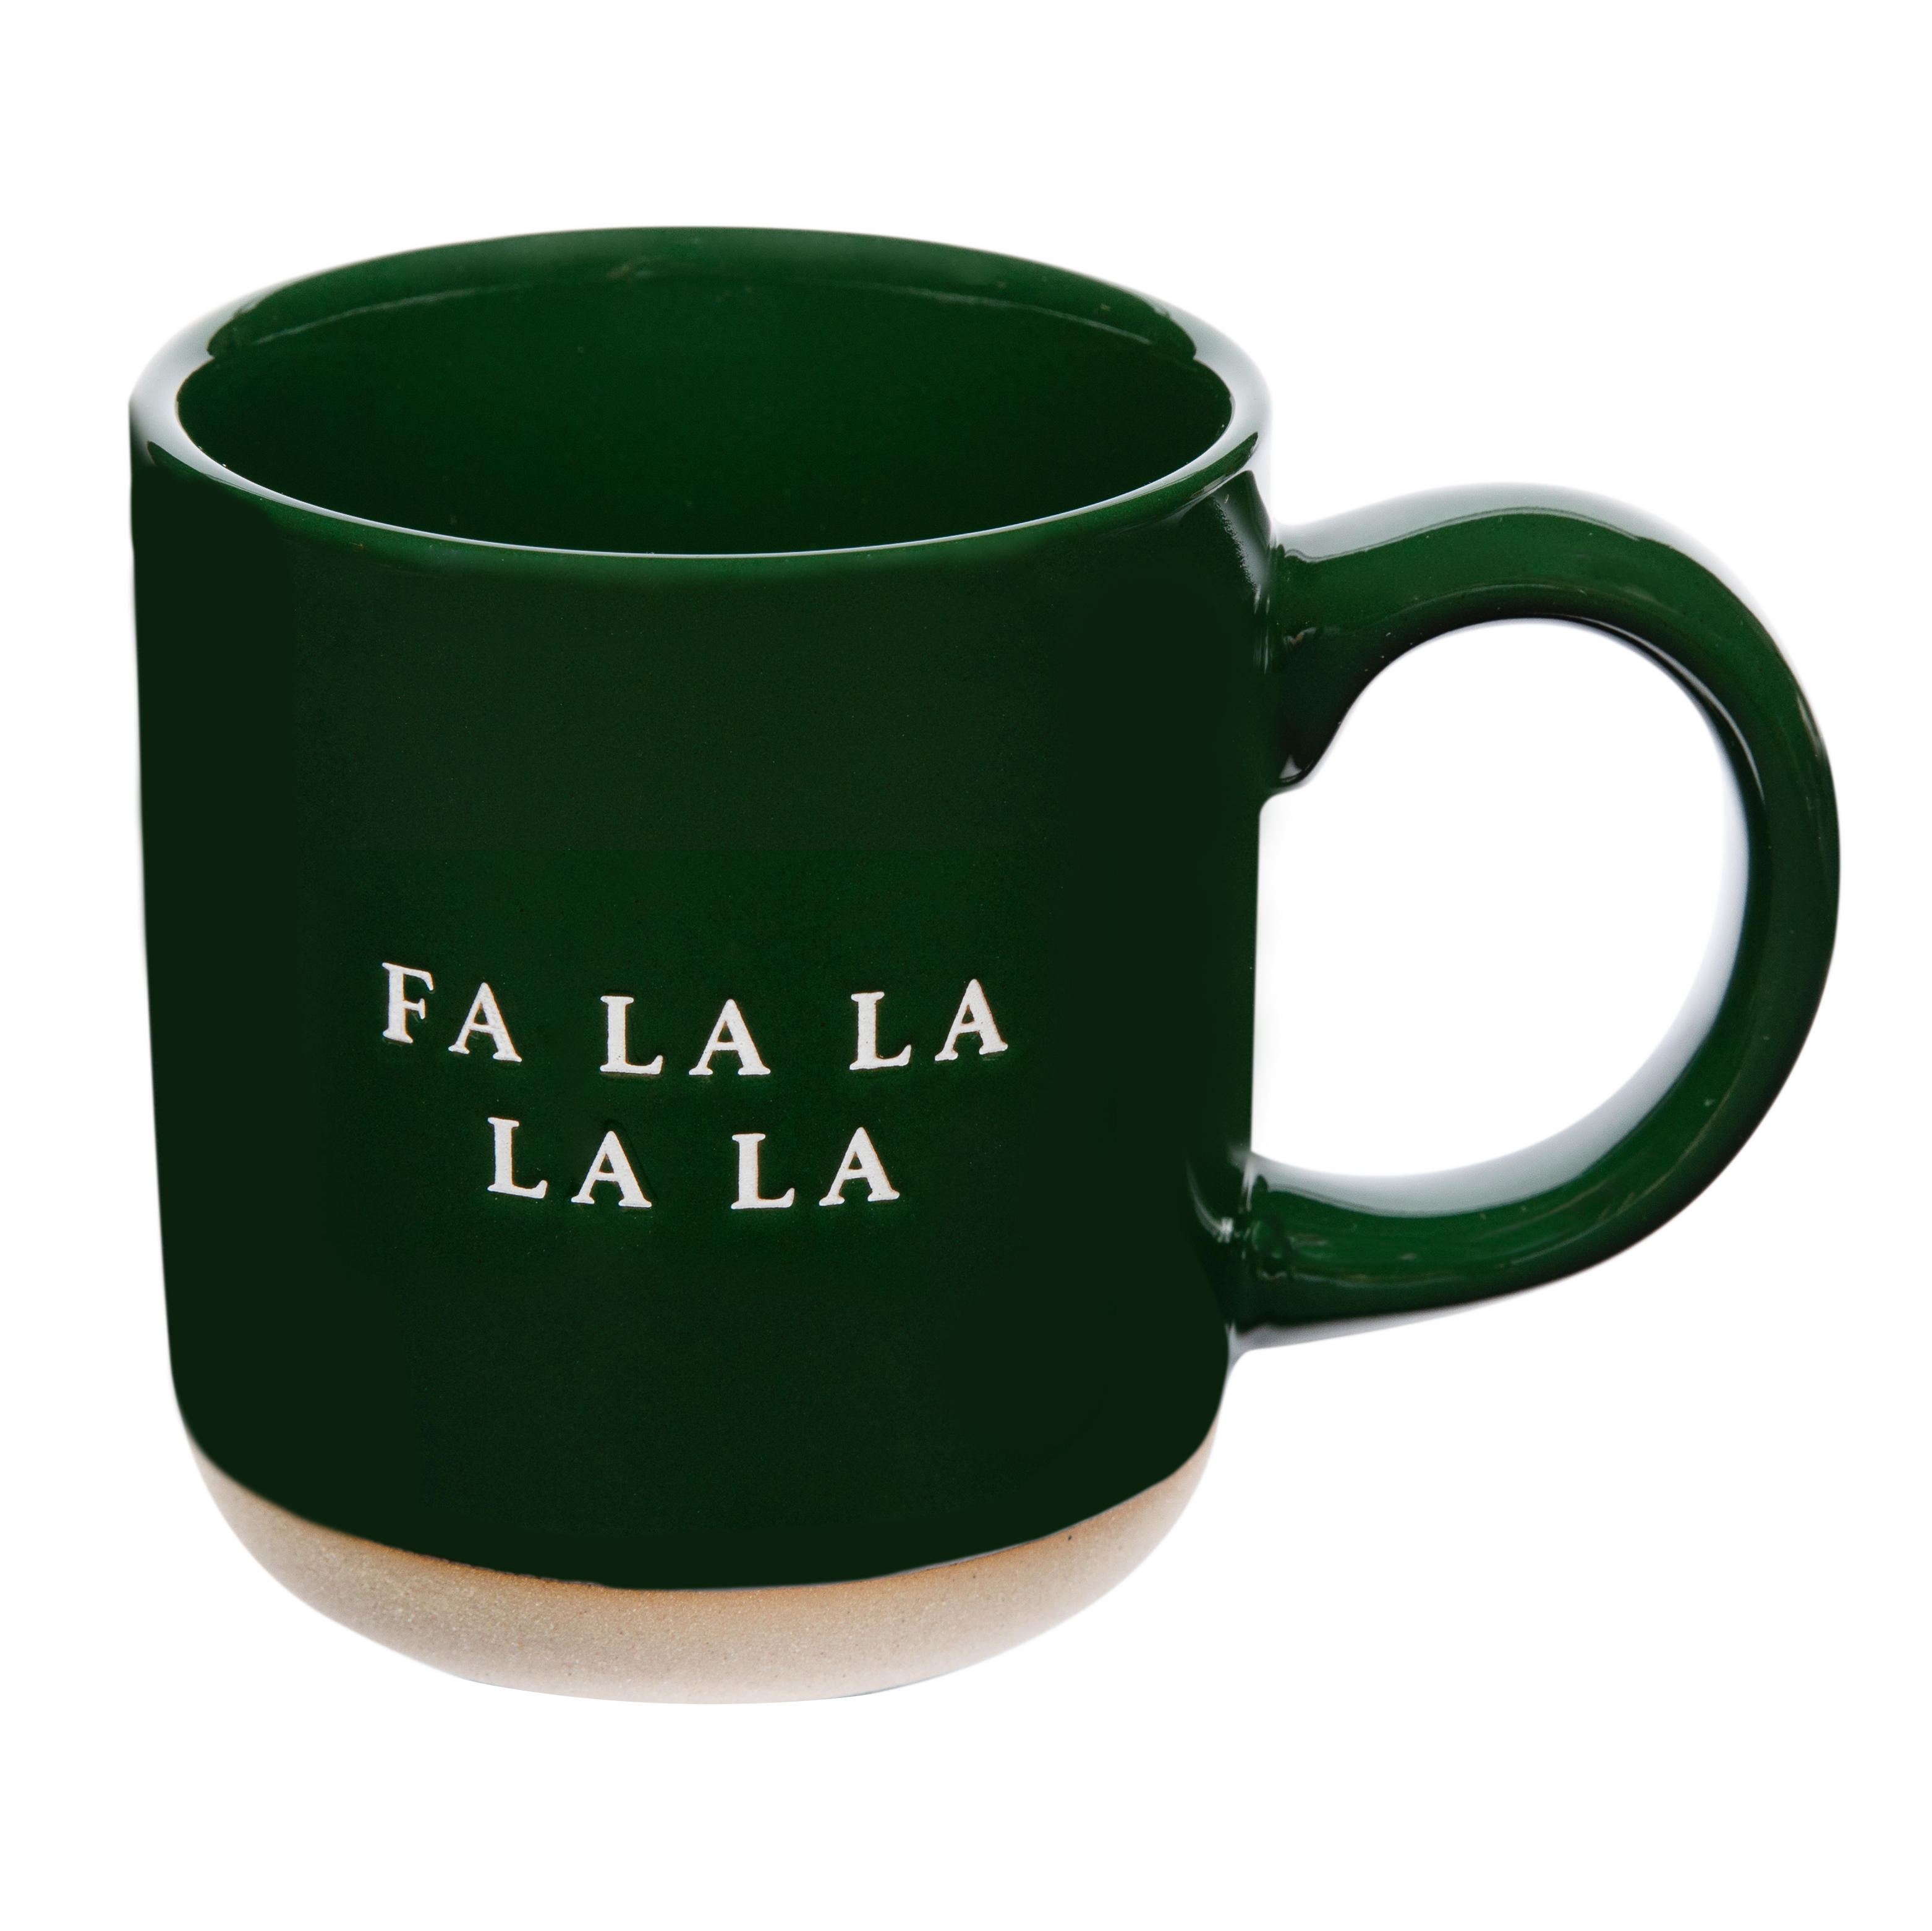 Fa La La Stoneware Coffee Mug